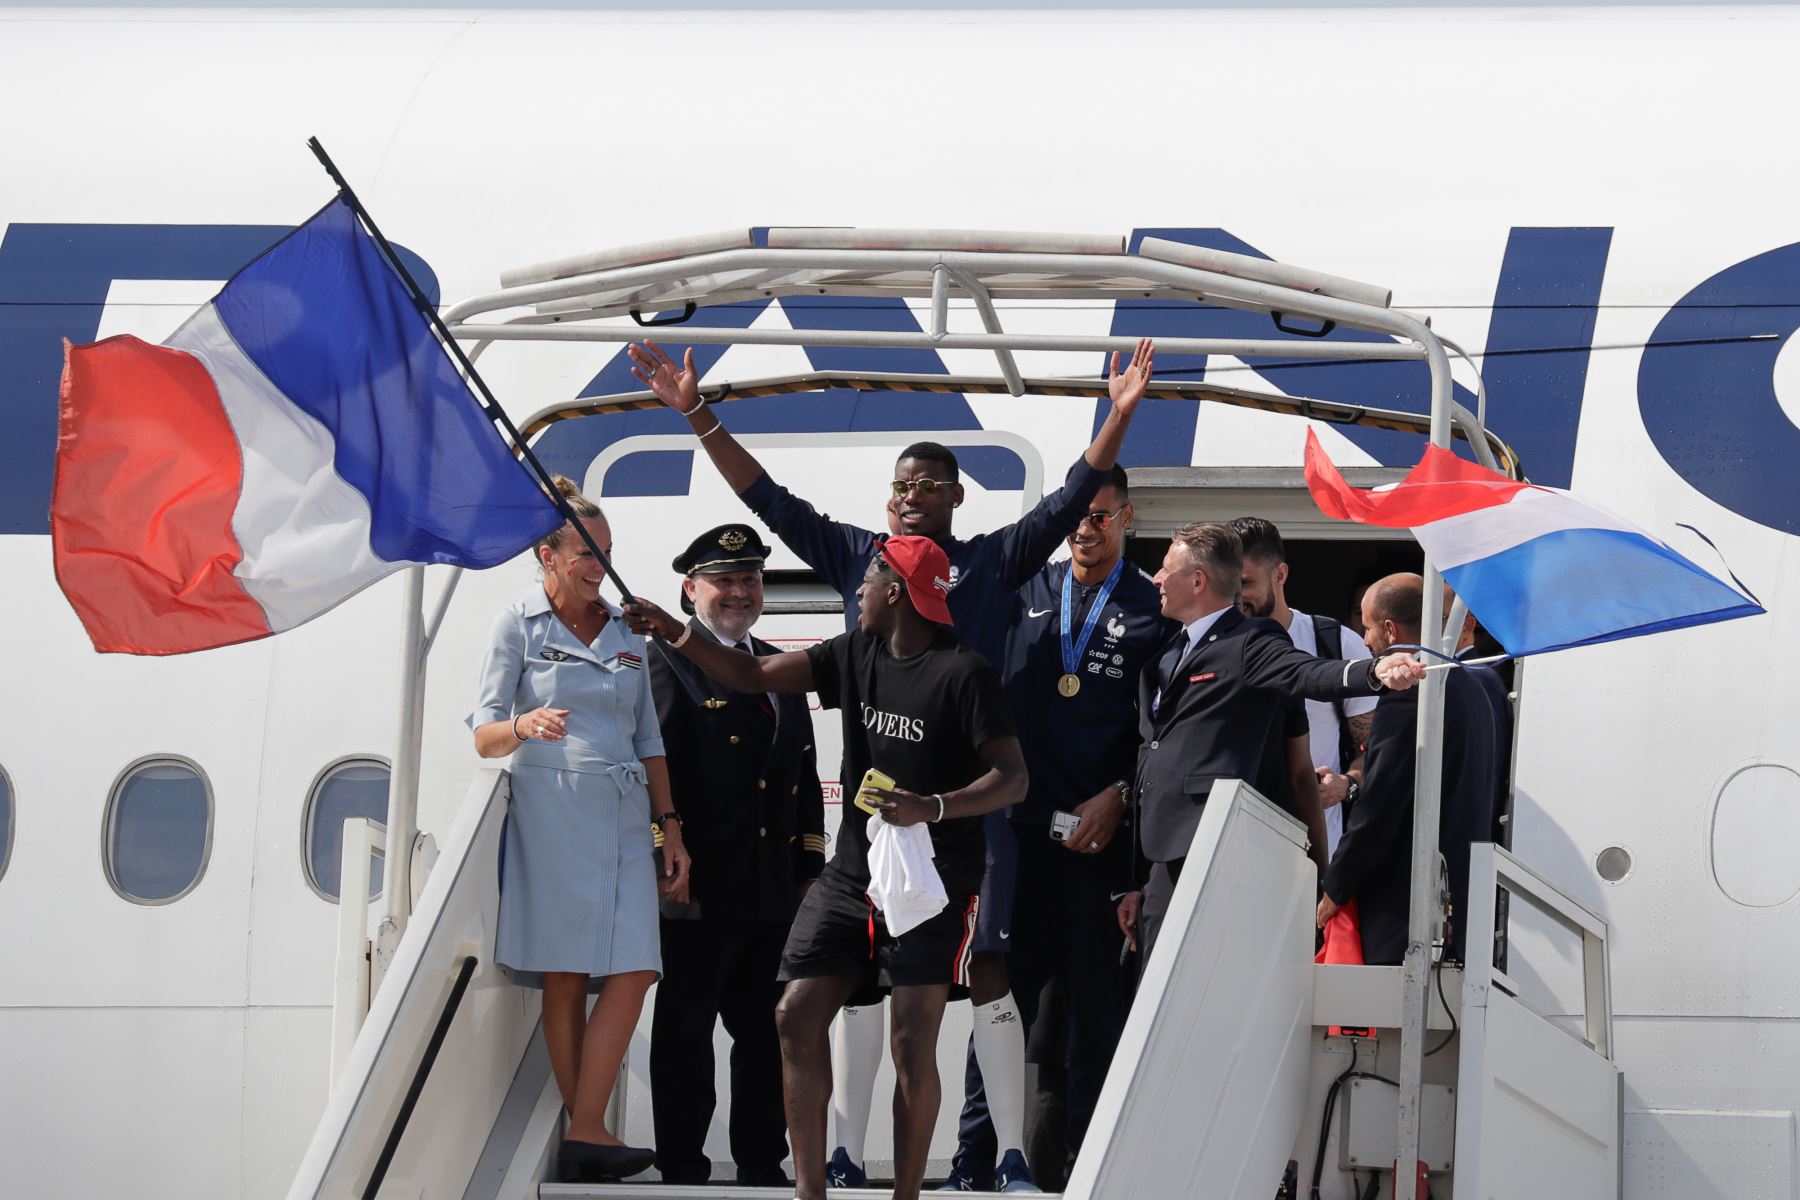 El defensor de Francia Benjamin Mendy  agita la bandera nacional francesa junto al centrocampista francés Paul Pogba  mientras desembarcan del avión a su llegada al aeropuerto Roissy-Charles de Gaulle en las afueras de París, después ganando el partido de fútbol final de la Copa Mundial Rusia 2018. AFP